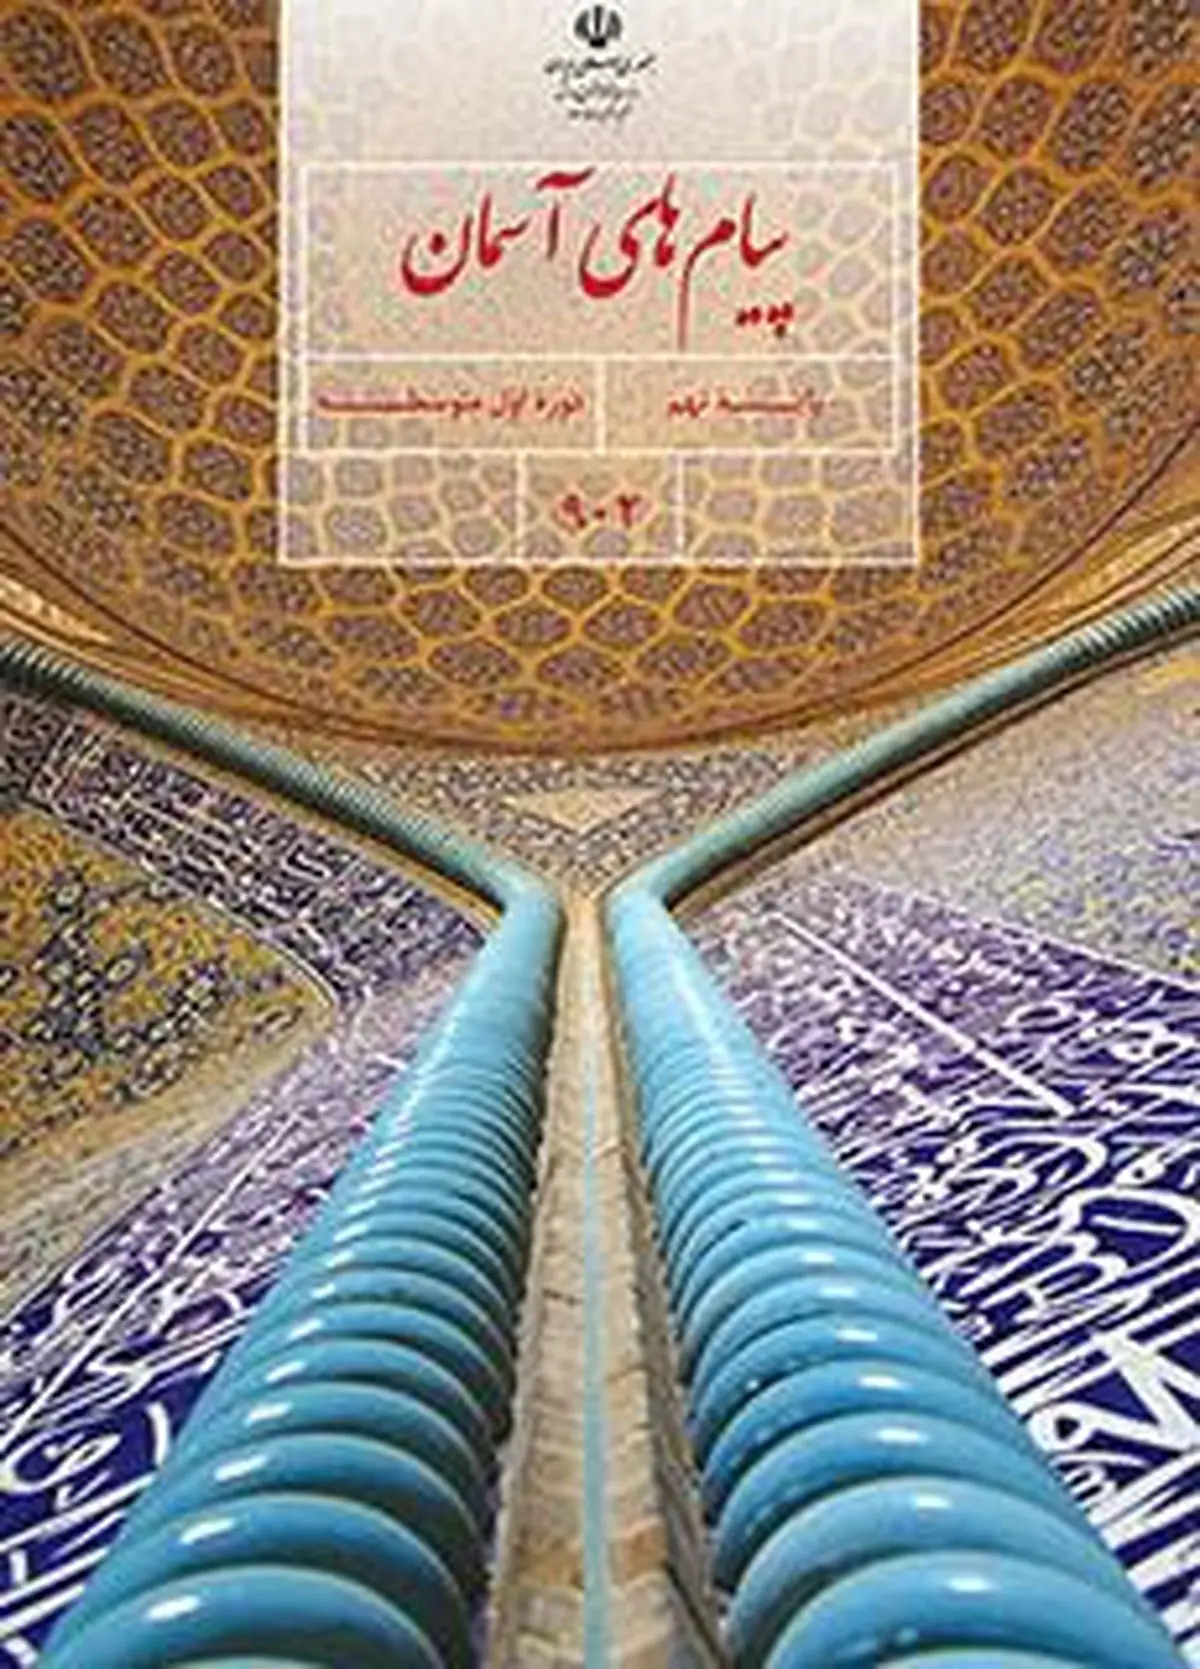 سوالات امتحان پیام های آسمان نهم تهران خرداد ۱۴۰۳ + پاسخنامه تشریحی